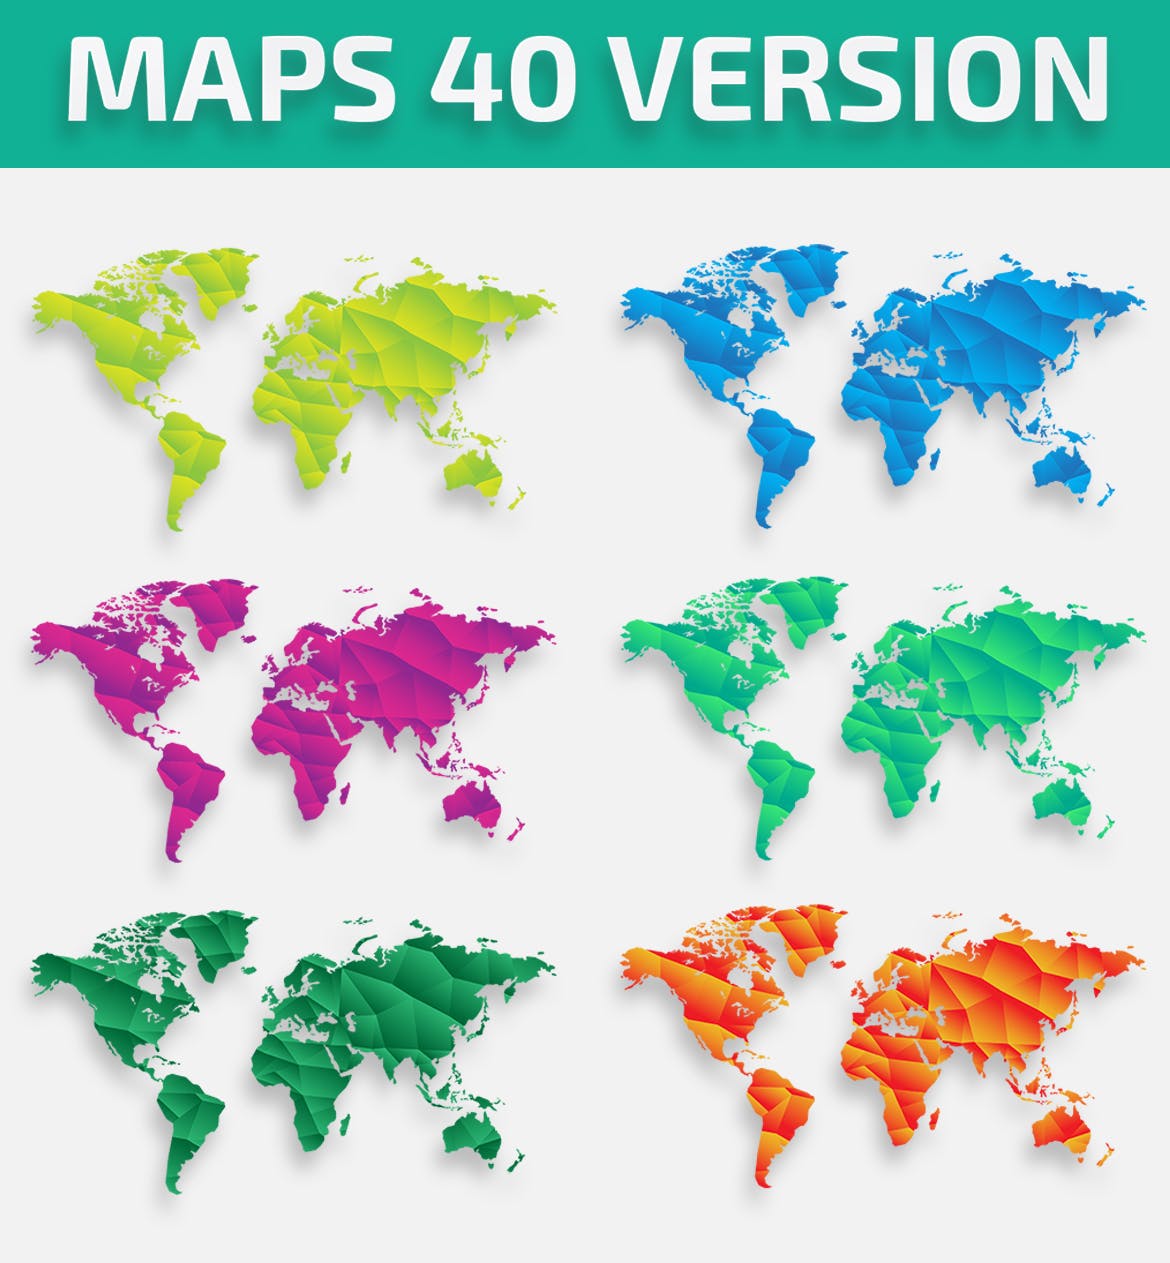 40种设计风格世界地图矢量图形设计素材下载 Map of the world 40 Version插图(2)